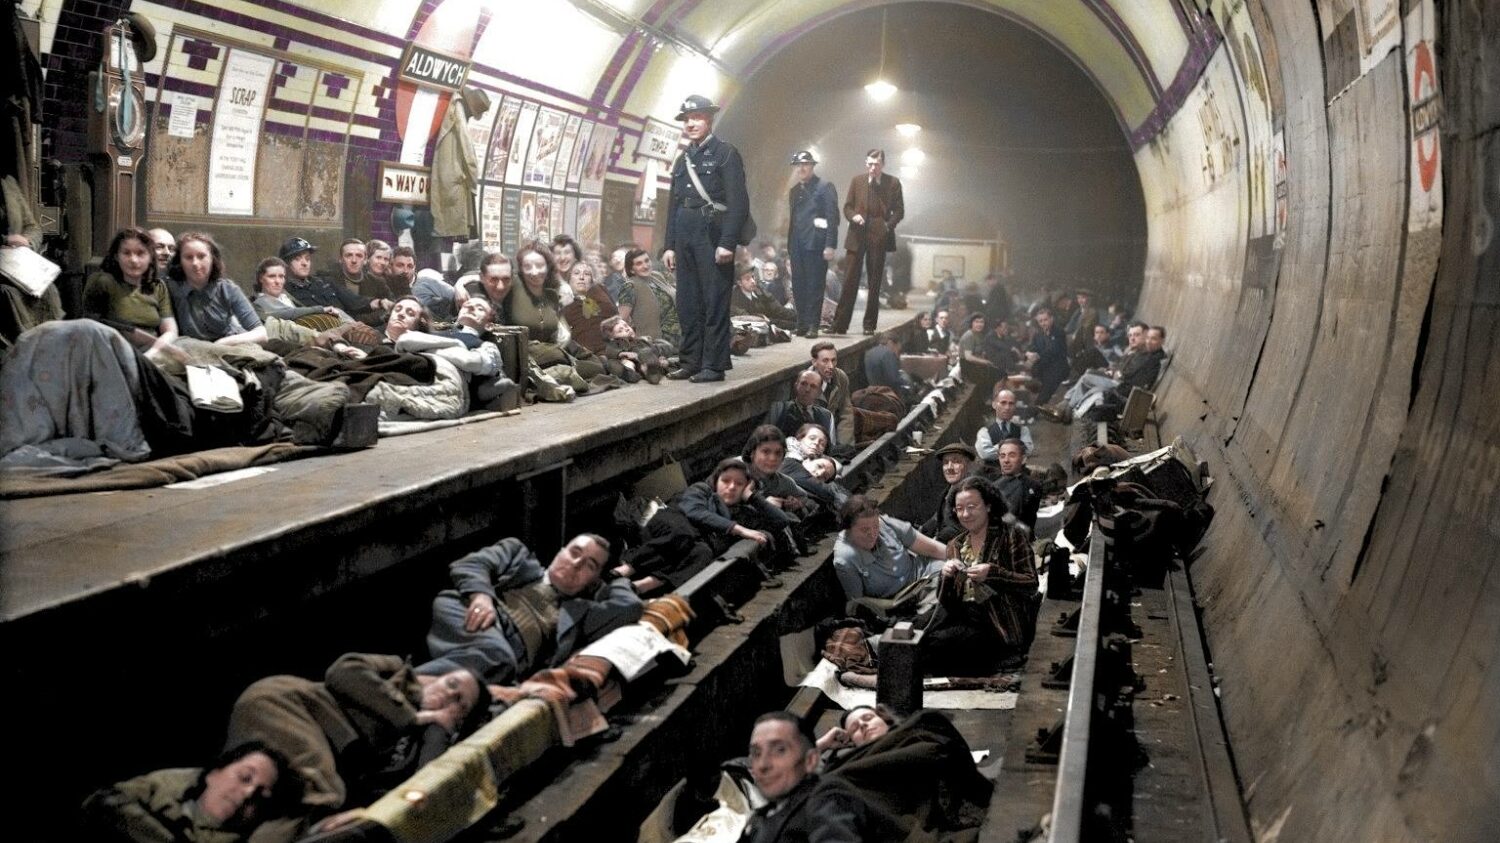 Úvodní snímek nás přenese do stanice Aldwych, která byla v září 1940 adaptována výhradně na kryt pro veřejnost. Provoz metra byl na odbočce do stanice uzavřen až do léta 1946. (zdroj: IWM; kolorováno Roystonem Leonardem)